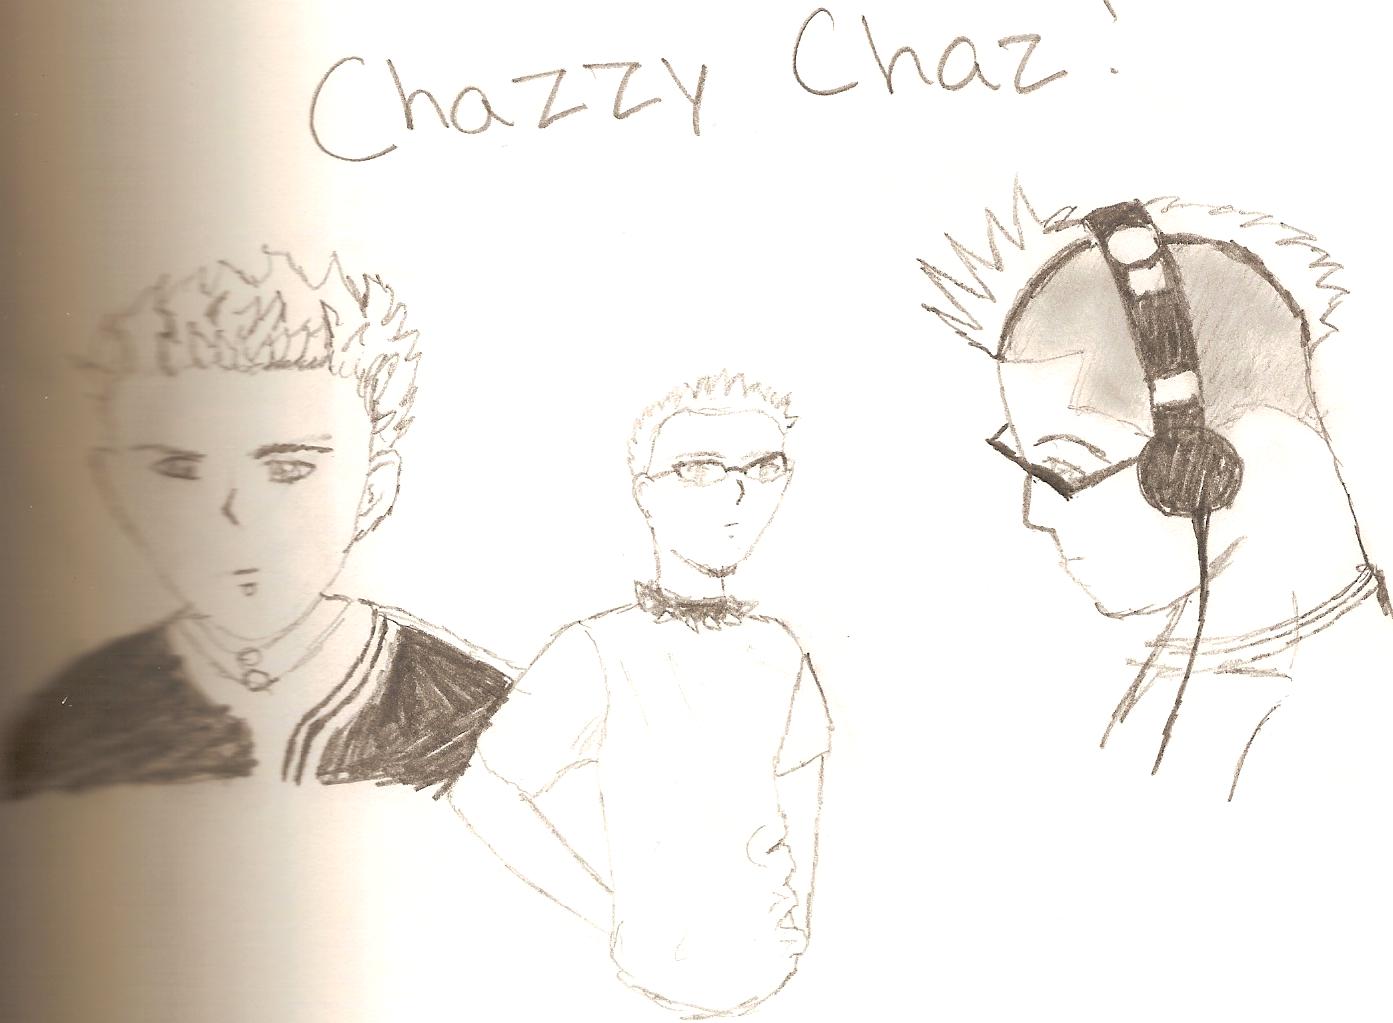 Chazzy-Chaz by Derufin